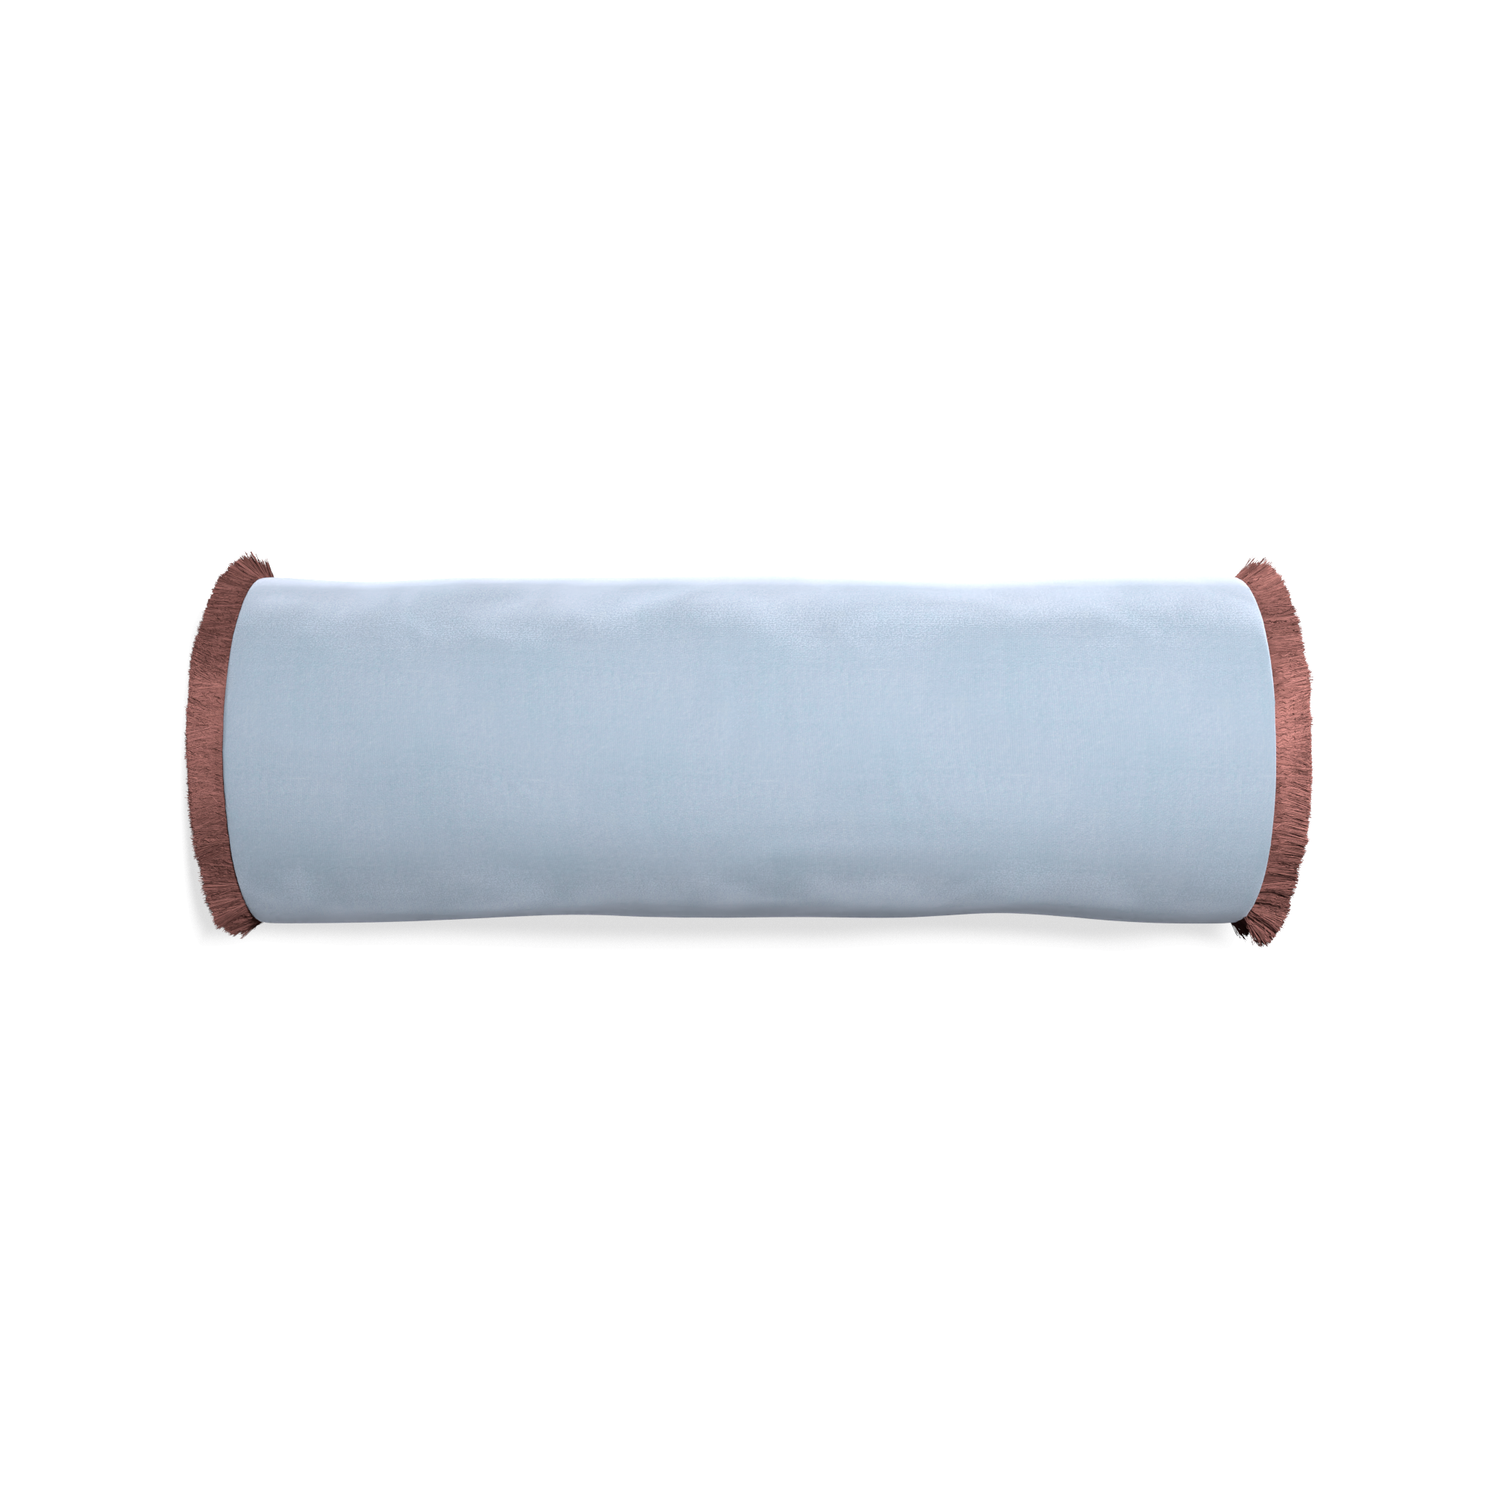 bolster light blue velvet pillow with dusty rose fringe